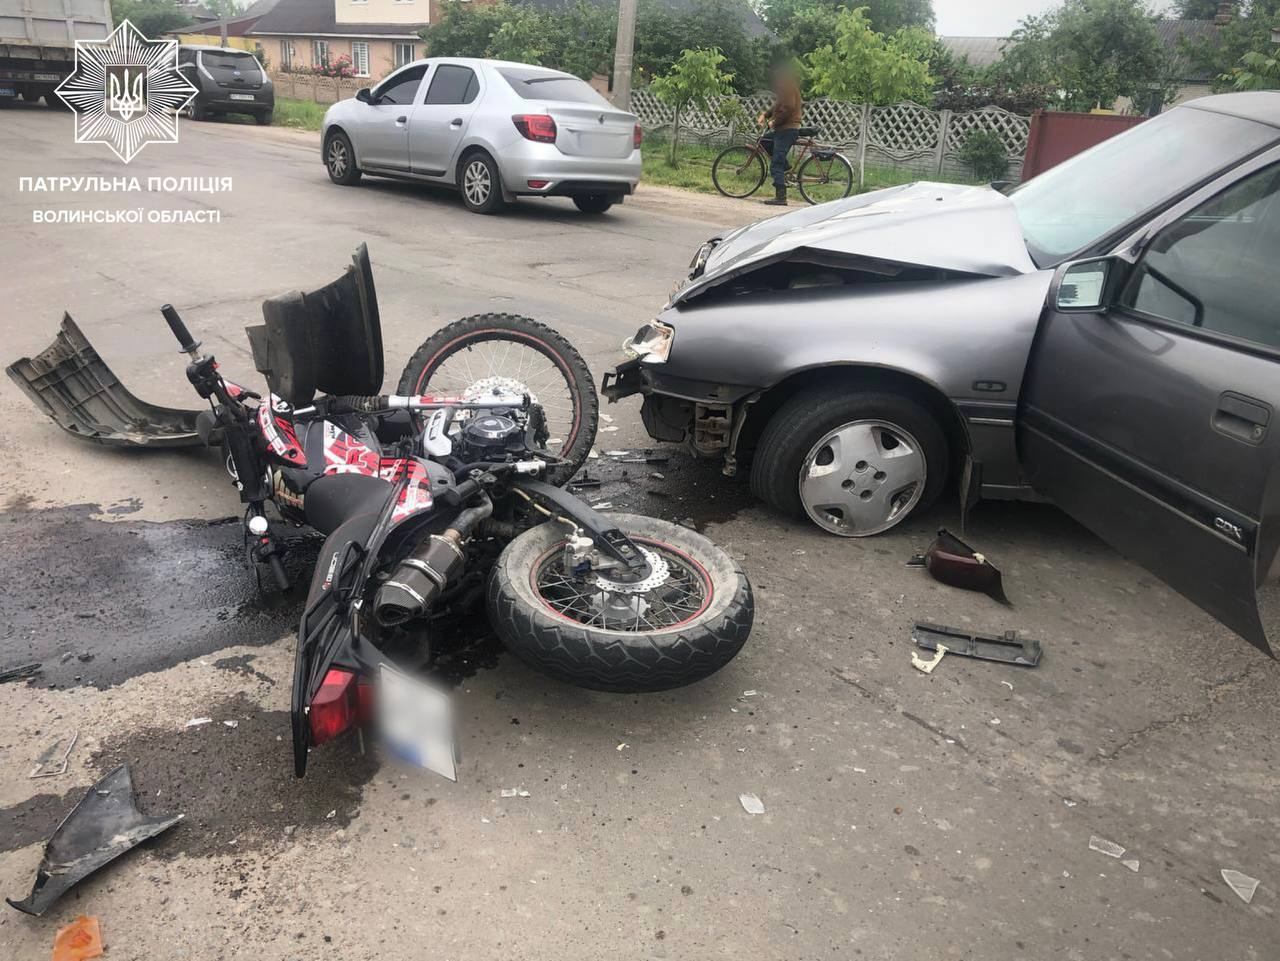 Був неуважним: у Ковелі водій Opel збив мотоцикліста (фото)